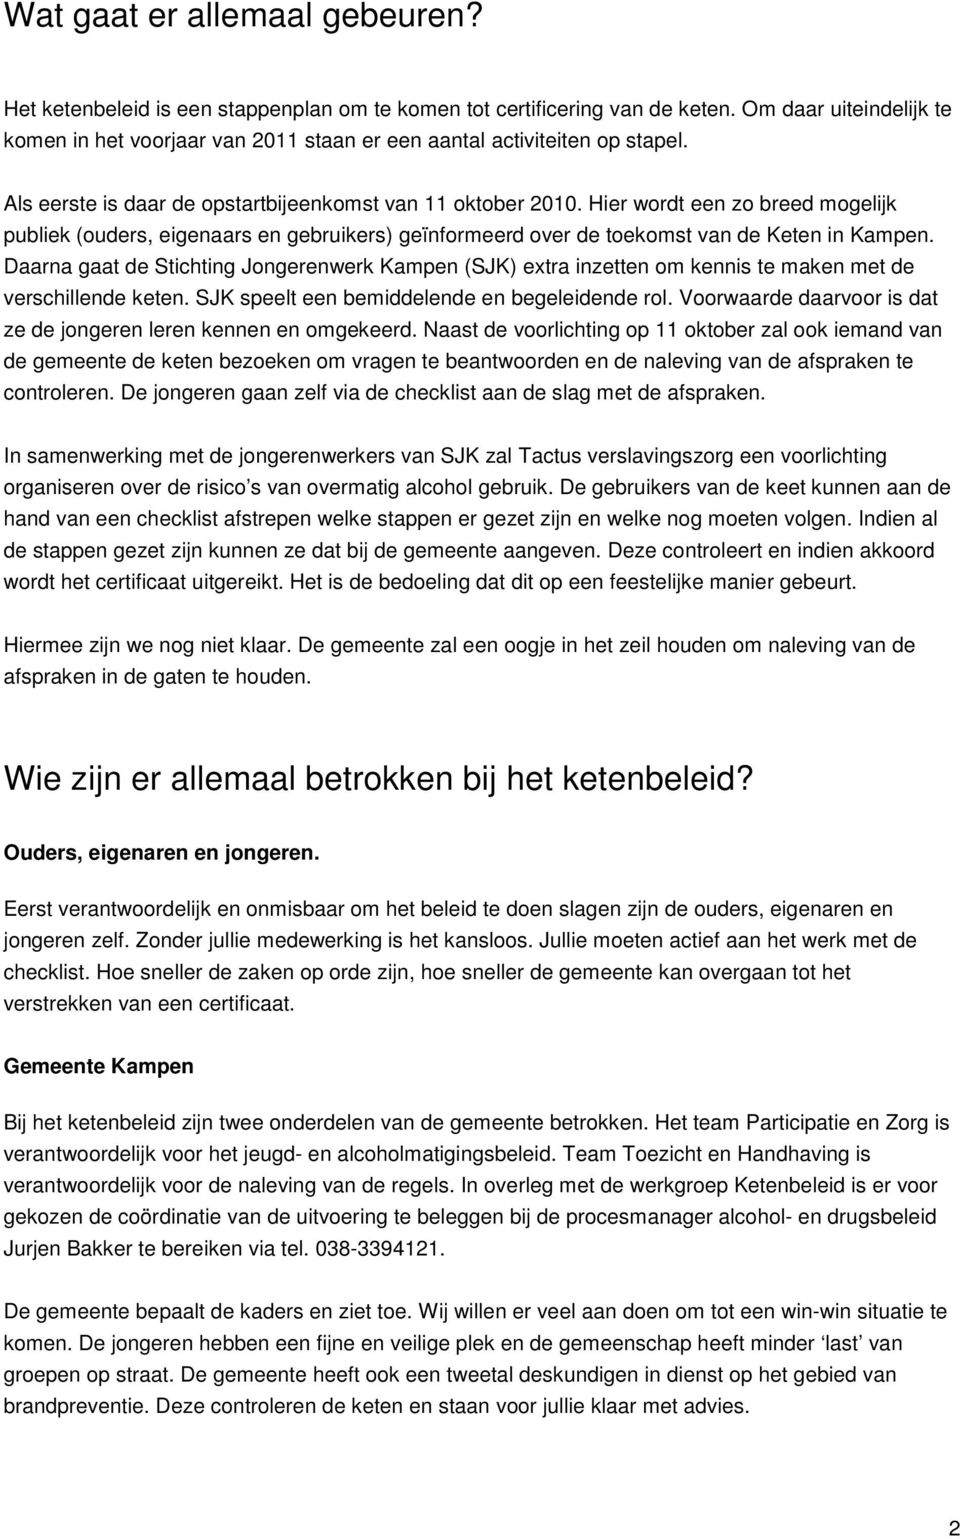 Hier wordt een zo breed mogelijk publiek (ouders, eigenaars en gebruikers) geïnformeerd over de toekomst van de Keten in Kampen.